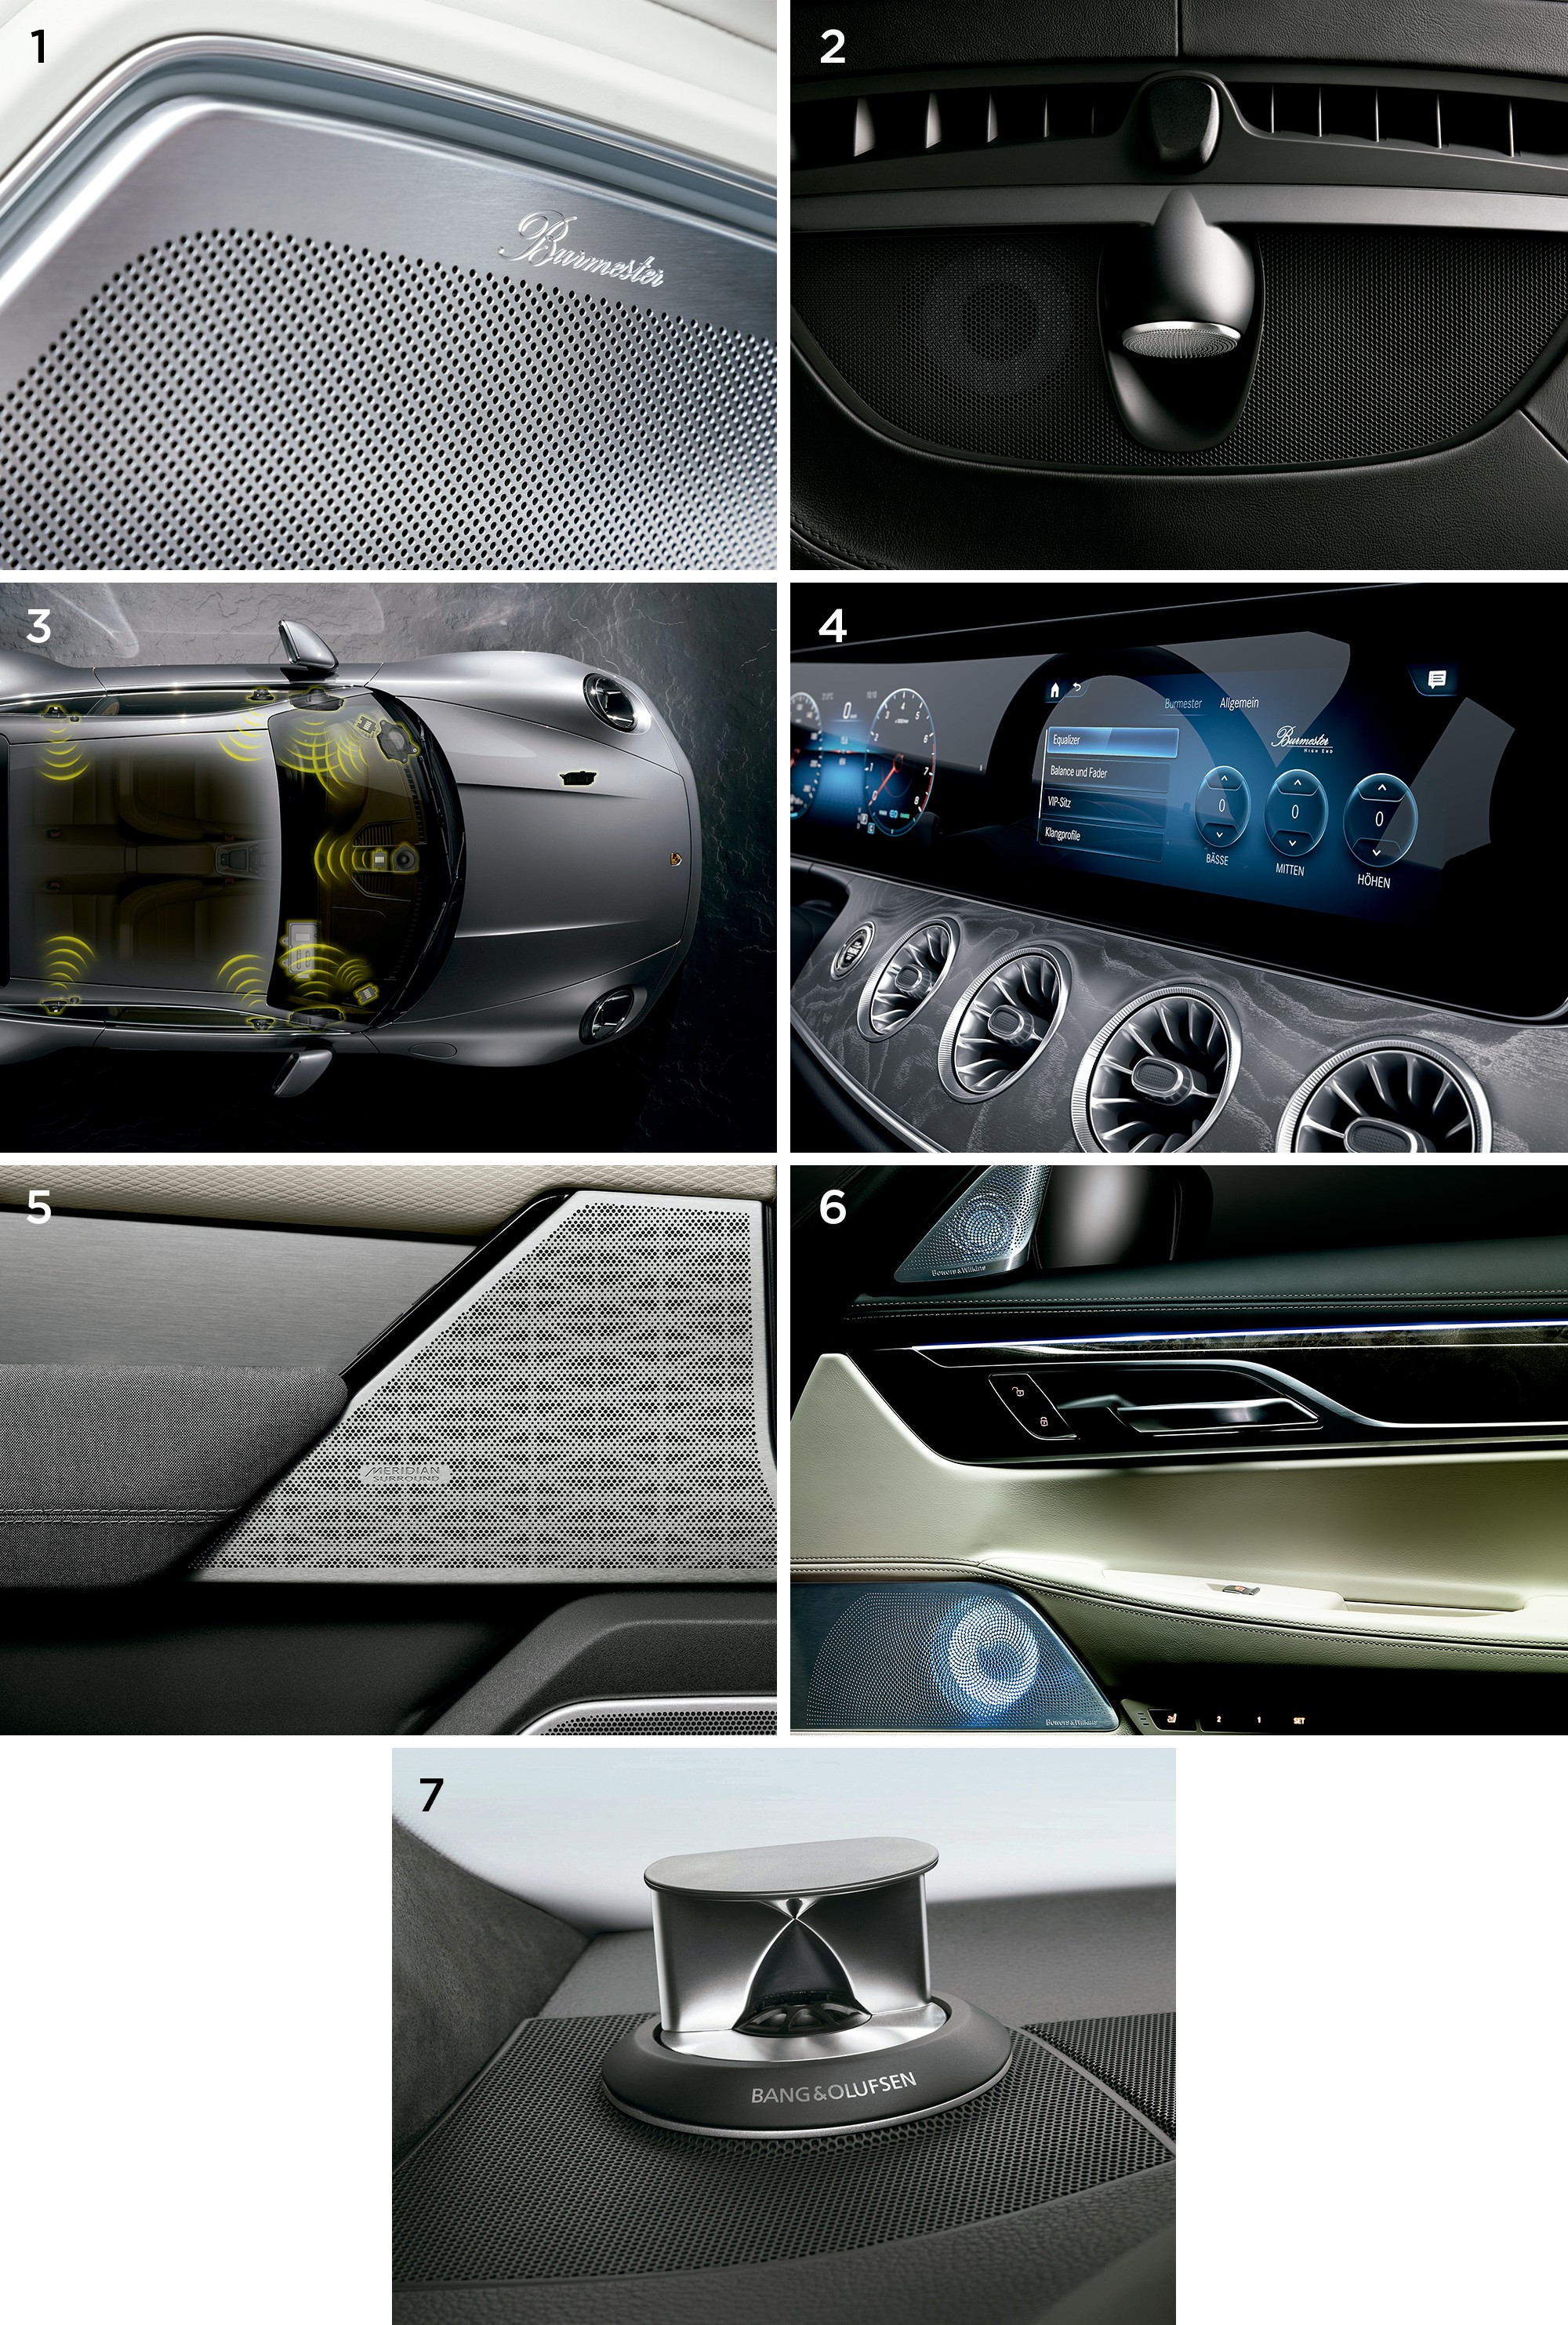 Premium Sound System: 1. Burmester garantiert die Komplexität und Qualität des Audiosystems im Porsche Panamera.  2. Details der zentralen Box von B & W - Bowers & Wilkins, mit der der XC90 ausgestattet ist.  3. Das Soundsystem kann Schallwellen in sensorische Reize umwandeln.  4. Auf dem Armaturenbrett eines Mercedes GT 63s 4MATIC + kann das von Burmester signierte 10-Kanal-System ausgeglichen werden.  5. Bei Land Rover Velar-Türen haben Meridian-Koffer das gleiche Sitzleder-Design.  6. Die Innenbeleuchtung des BMW X7 betont die Lautsprecher von Bowers & Wikins.  7. Details zum Bang & Olufsen-System auf dem Audi Q8-Armaturenbrett.  (Bild: Offenlegung)